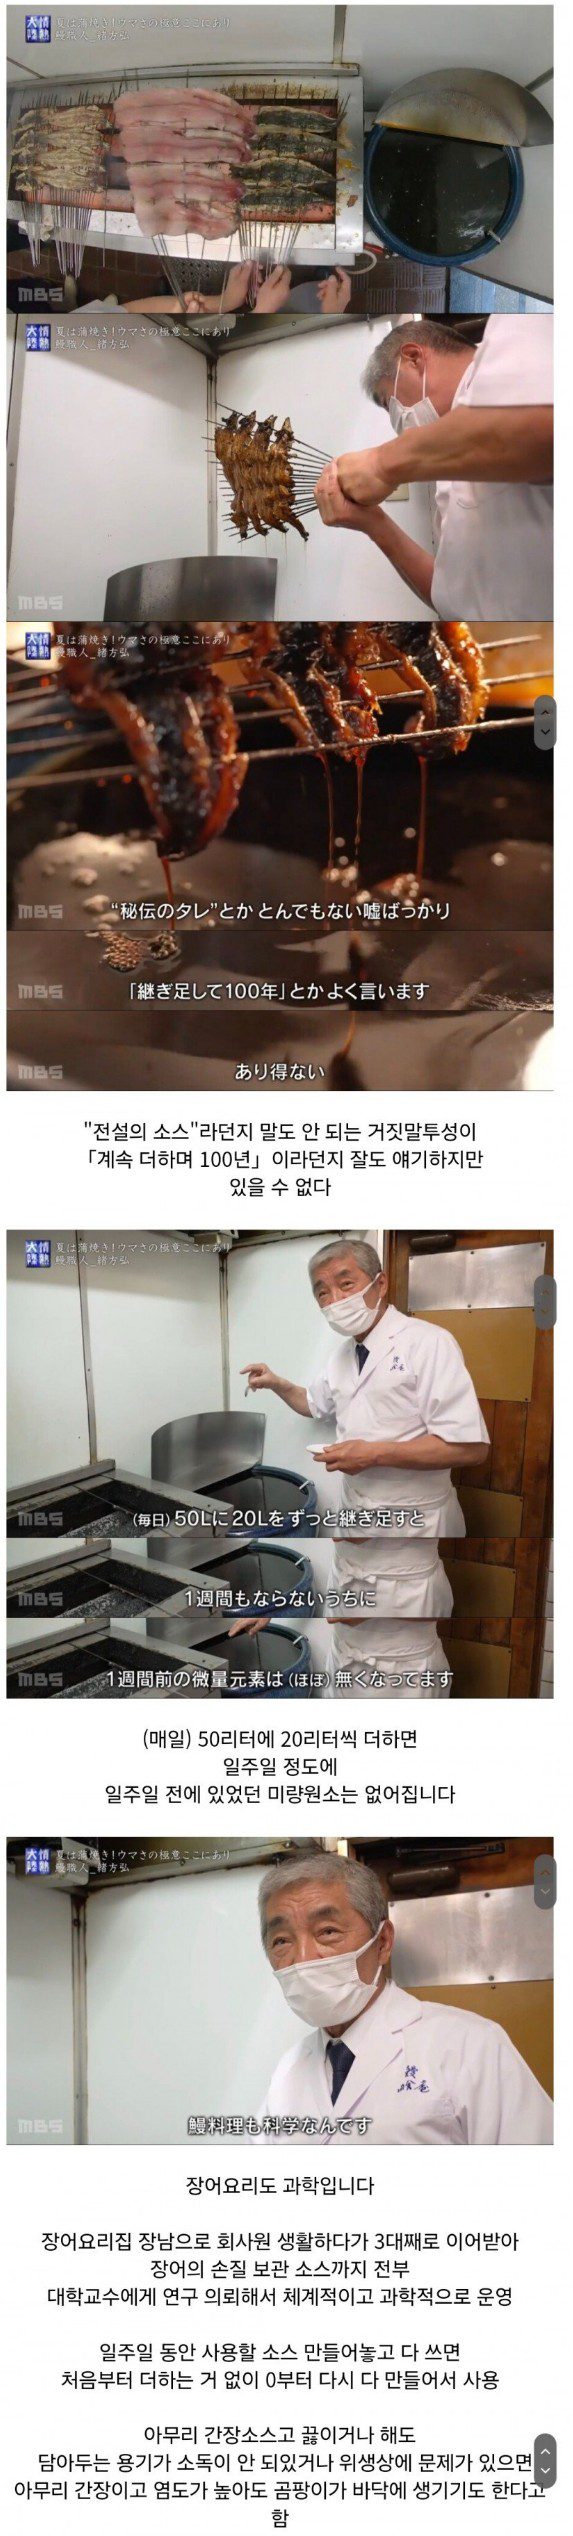 일본 유명 장어집 사장의 오래된 소스 팩폭